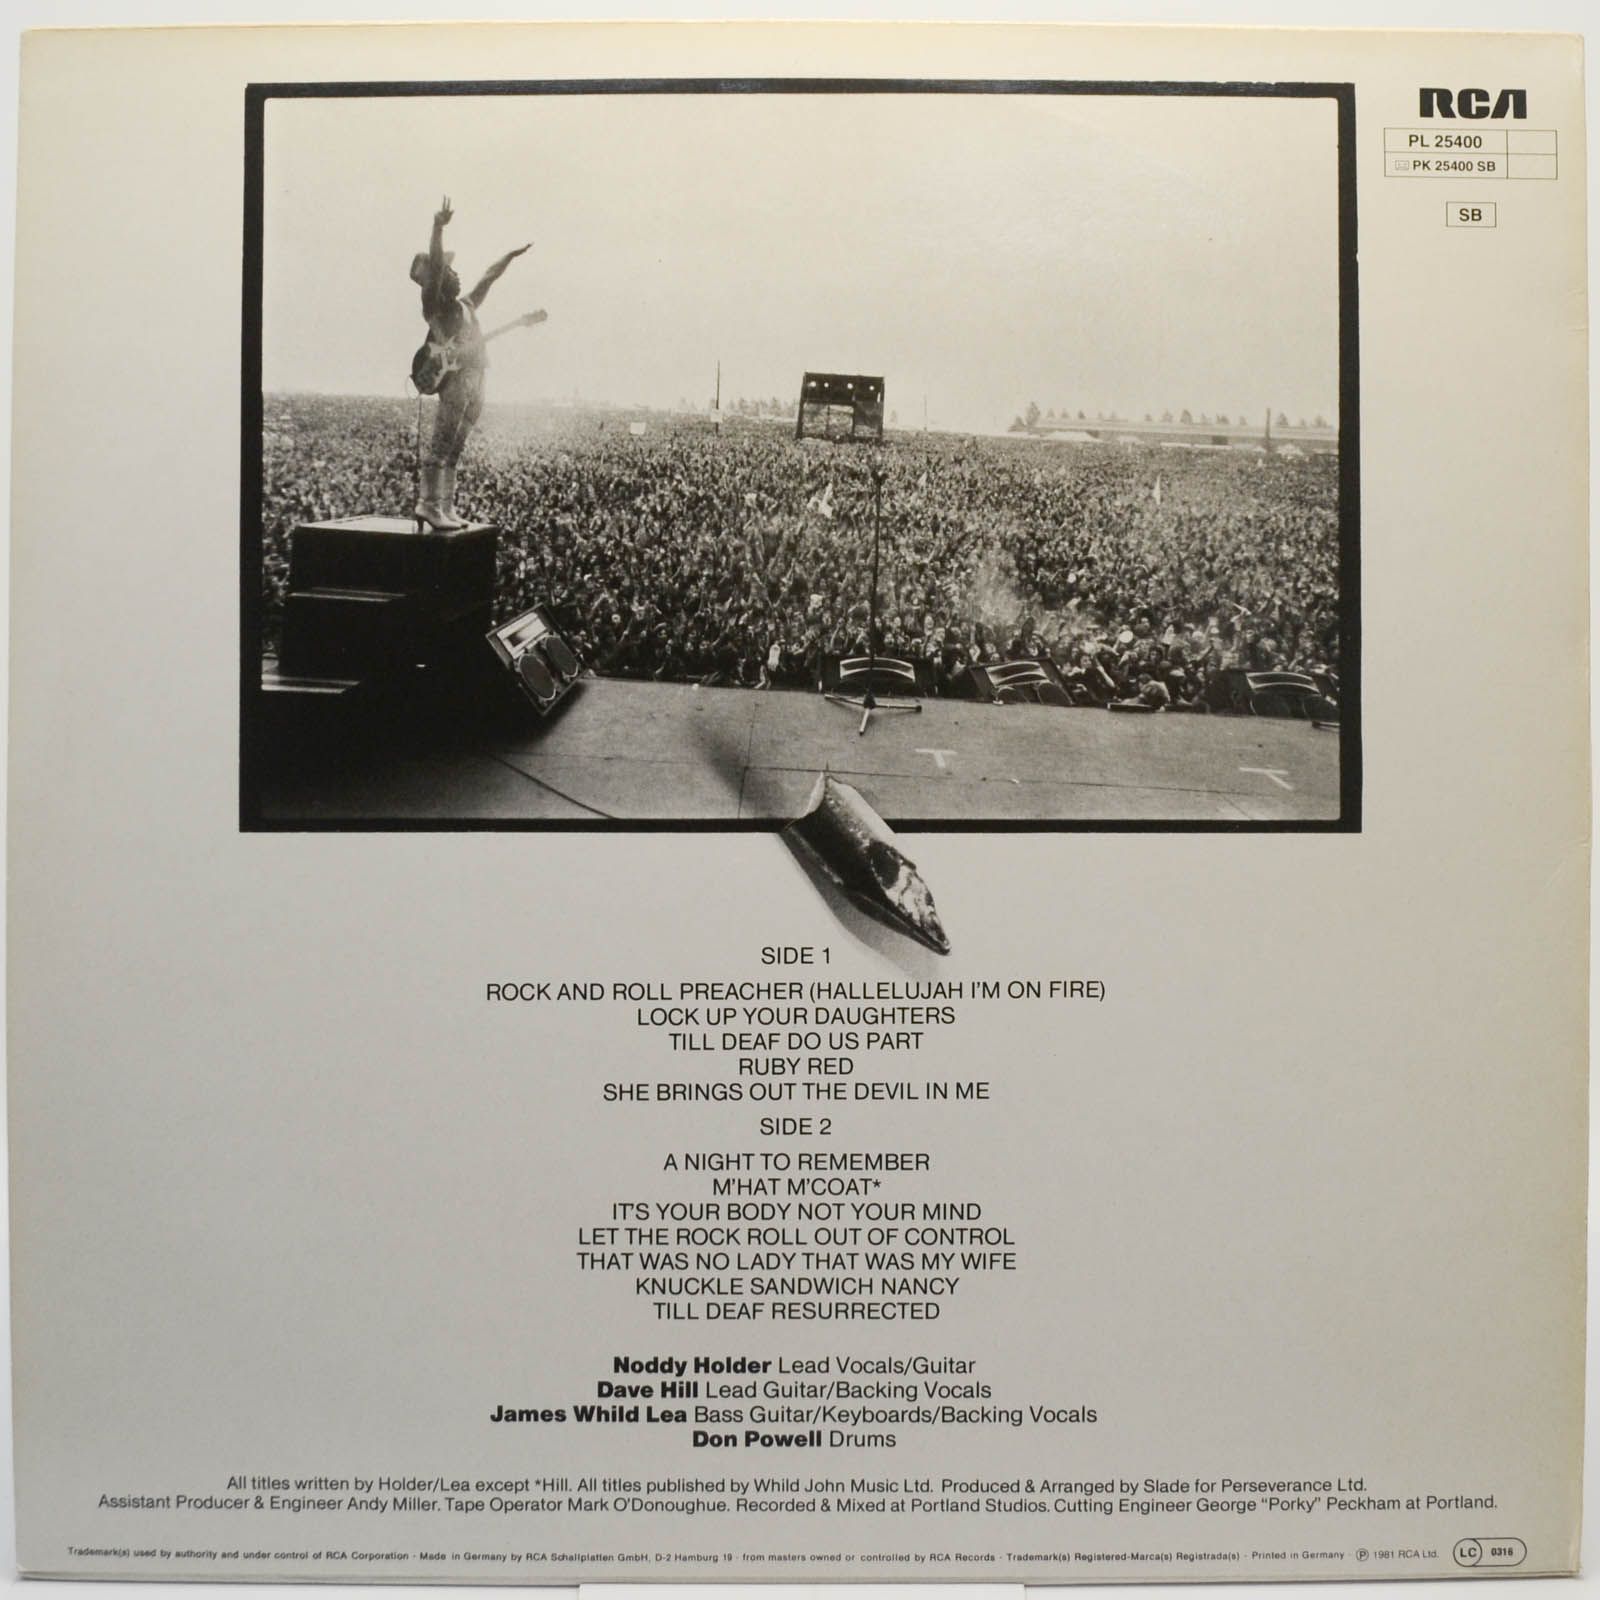 Slade — Till Deaf Do Us Part, 1981